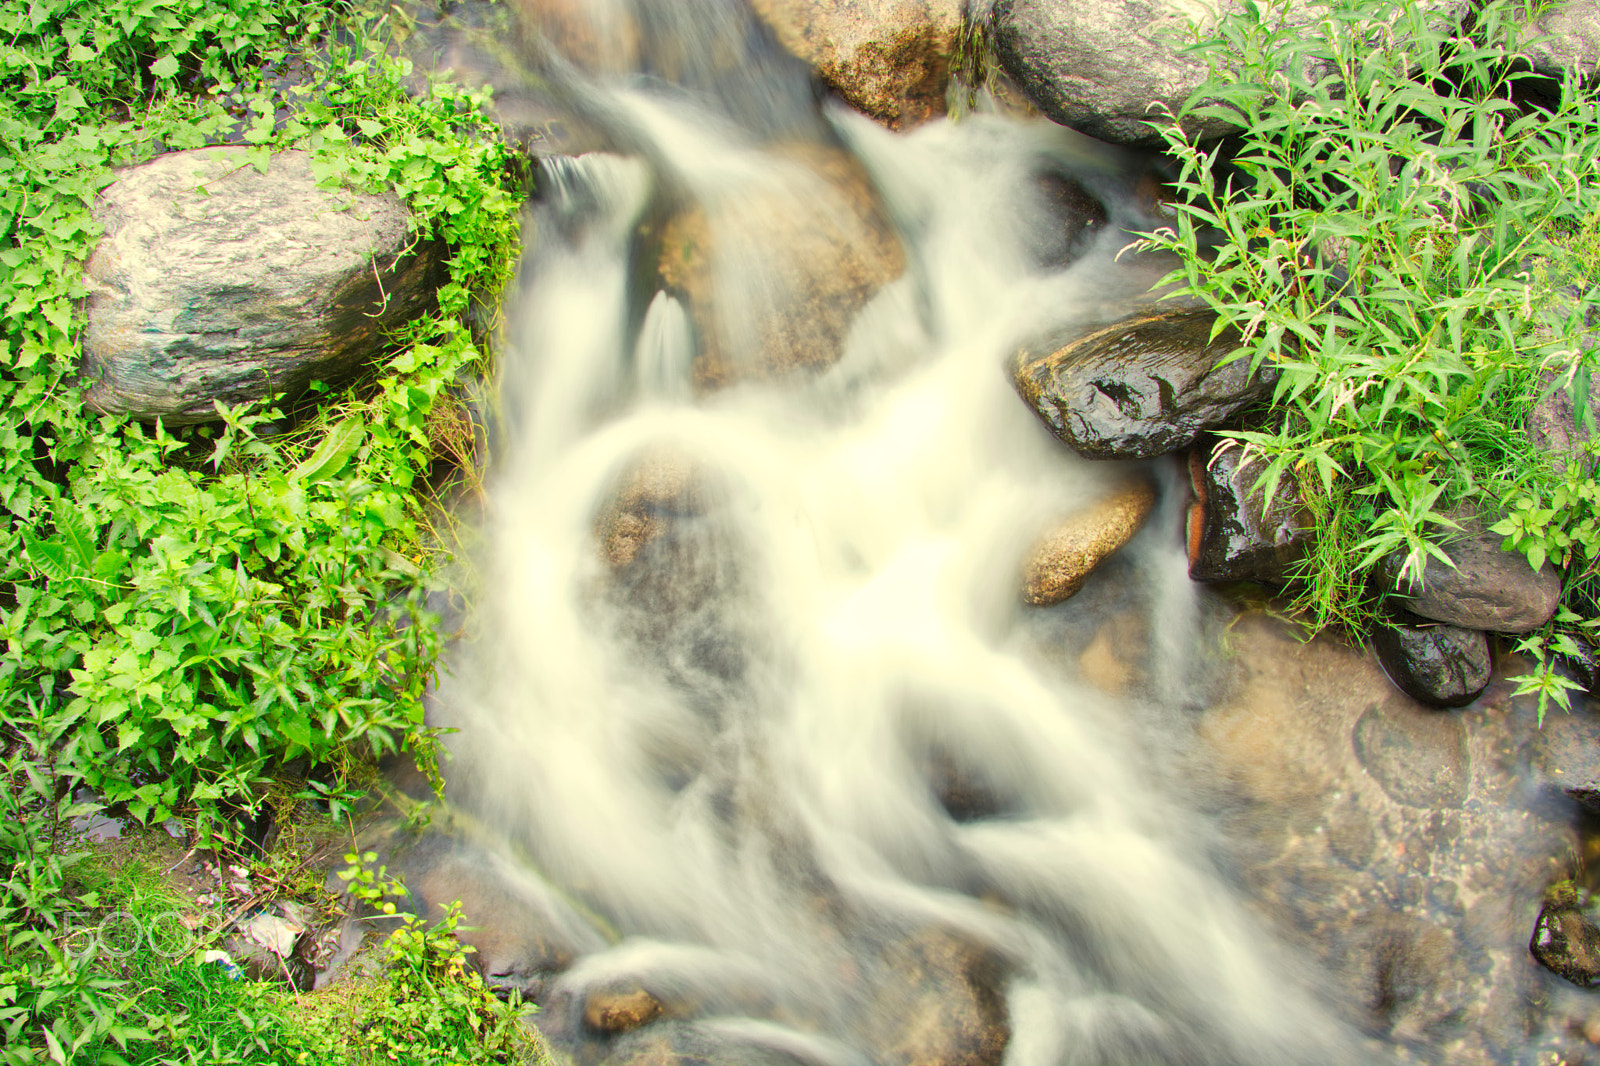 AF Zoom-Nikkor 35-135mm f/3.5-4.5 N sample photo. Mountain river landscape photography